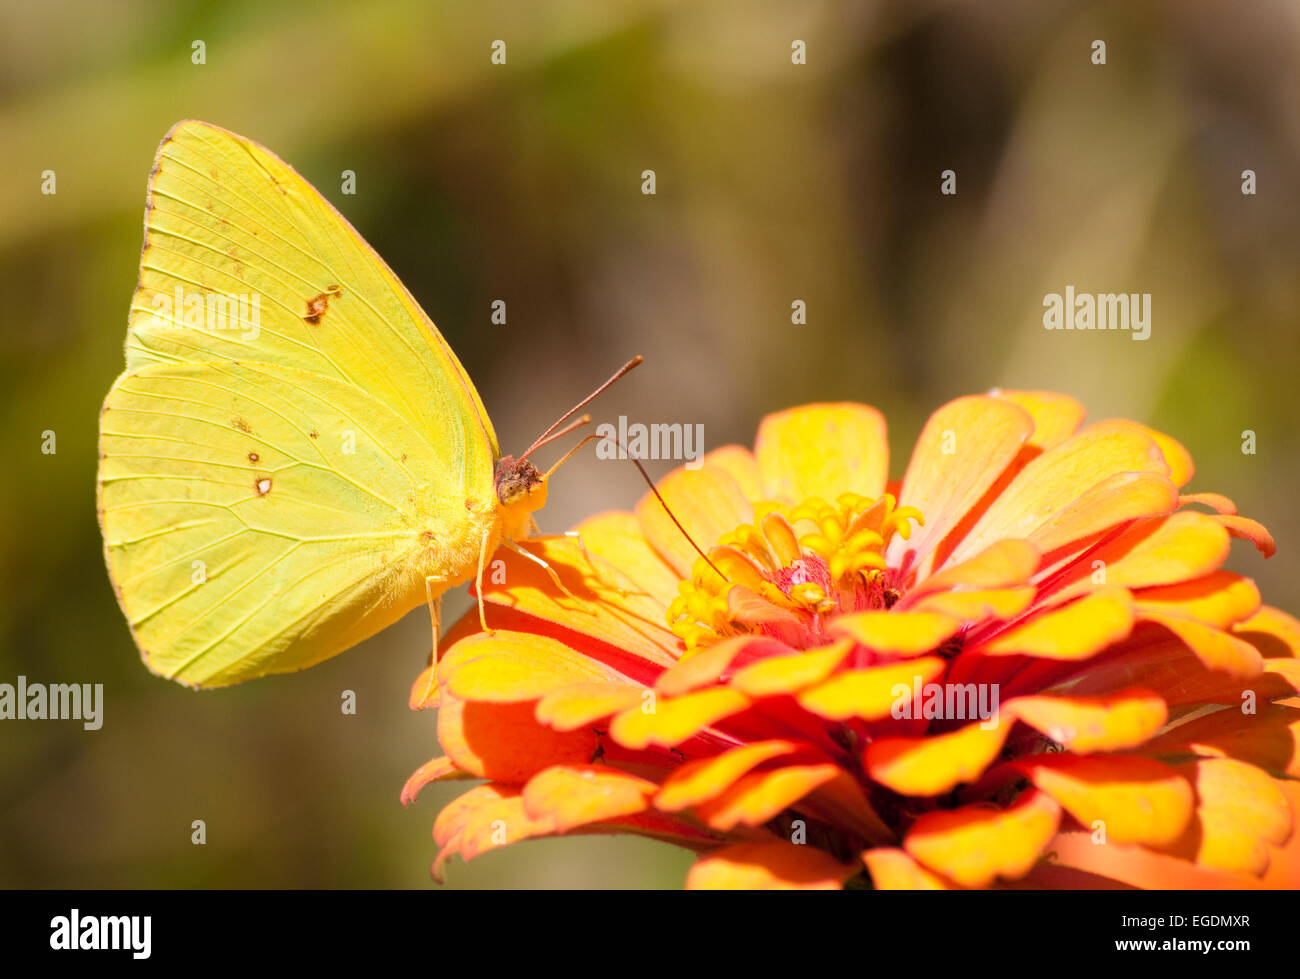 Nubes de mariposas de azufre amarillo brillante alimentándose de una flor de naranja Foto de stock